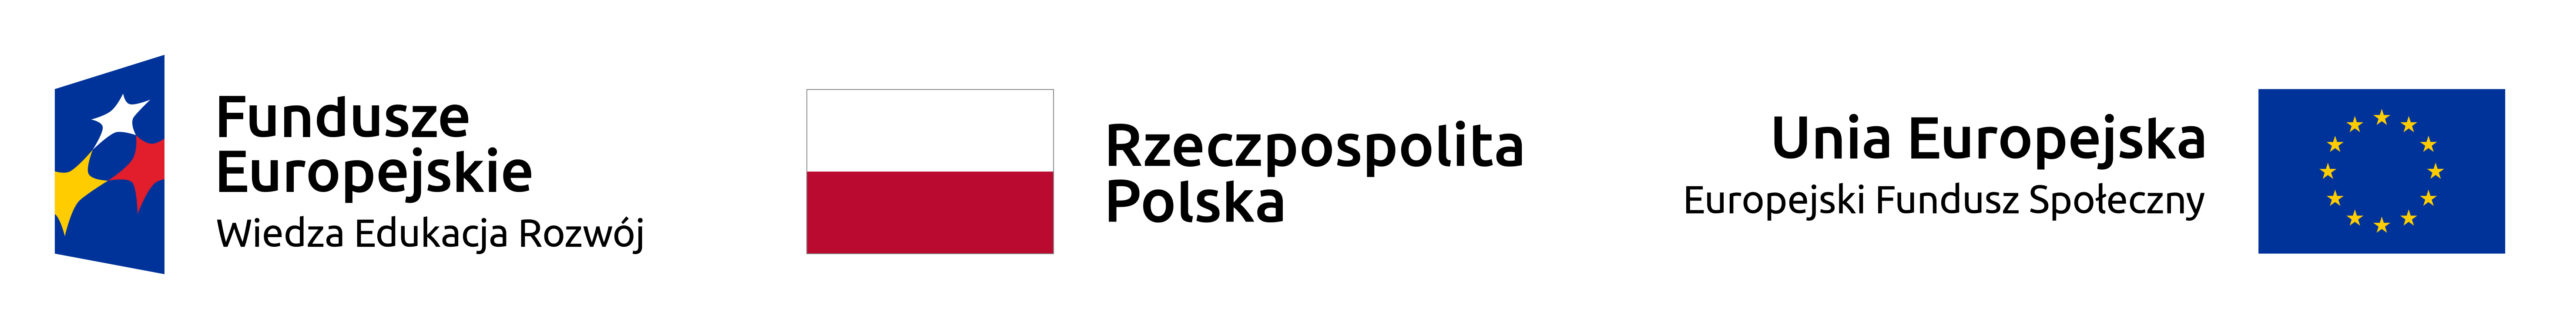 logotyp-rozdzielczosc-scaled.jpg